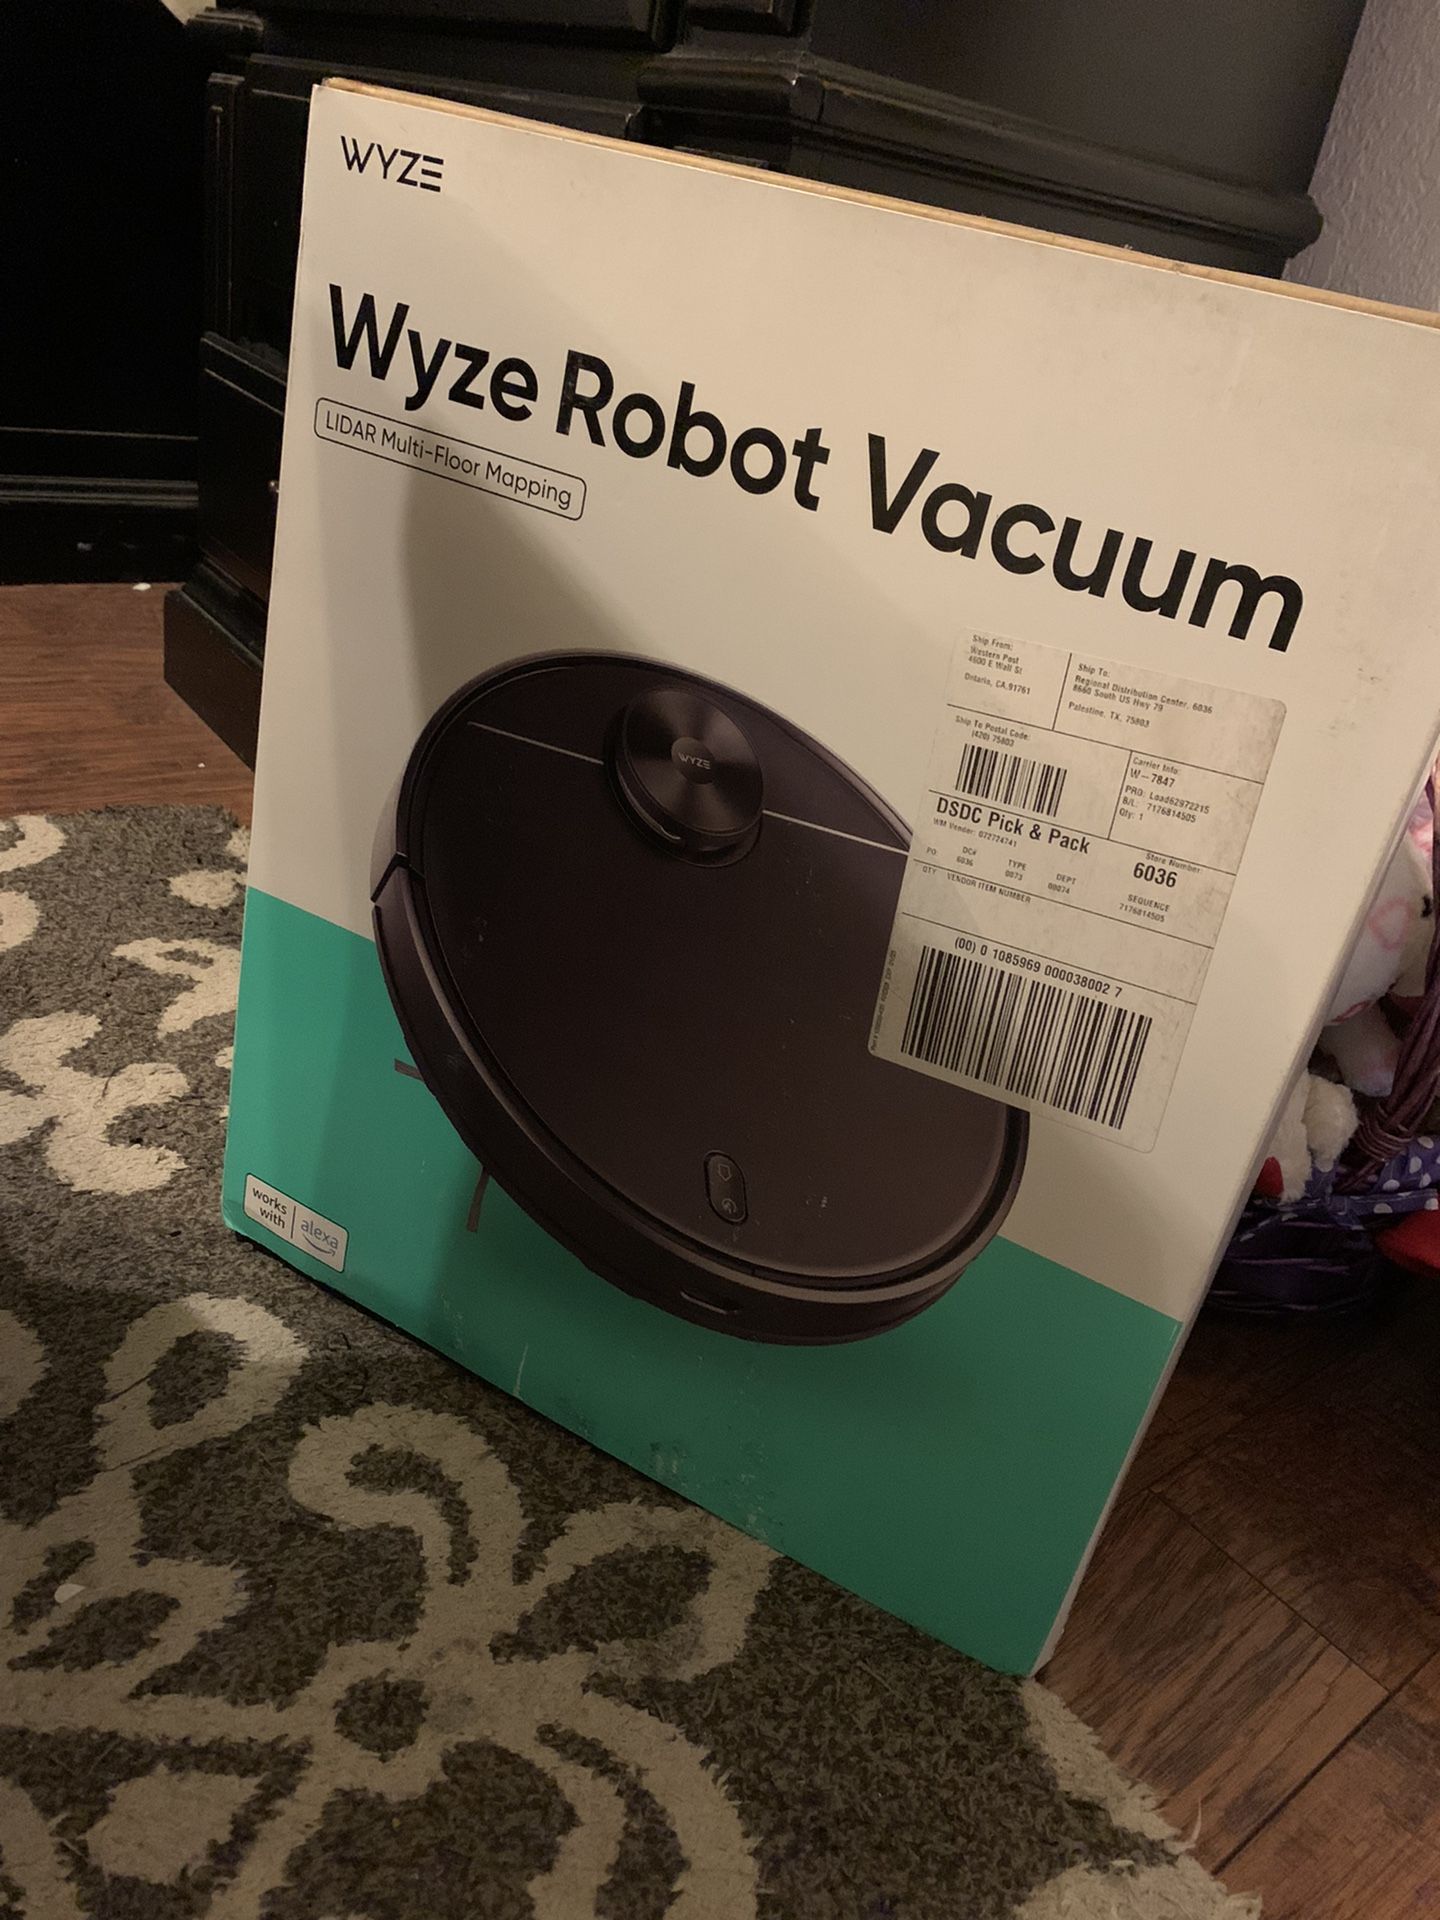 Robot Vacuum “New In Box”